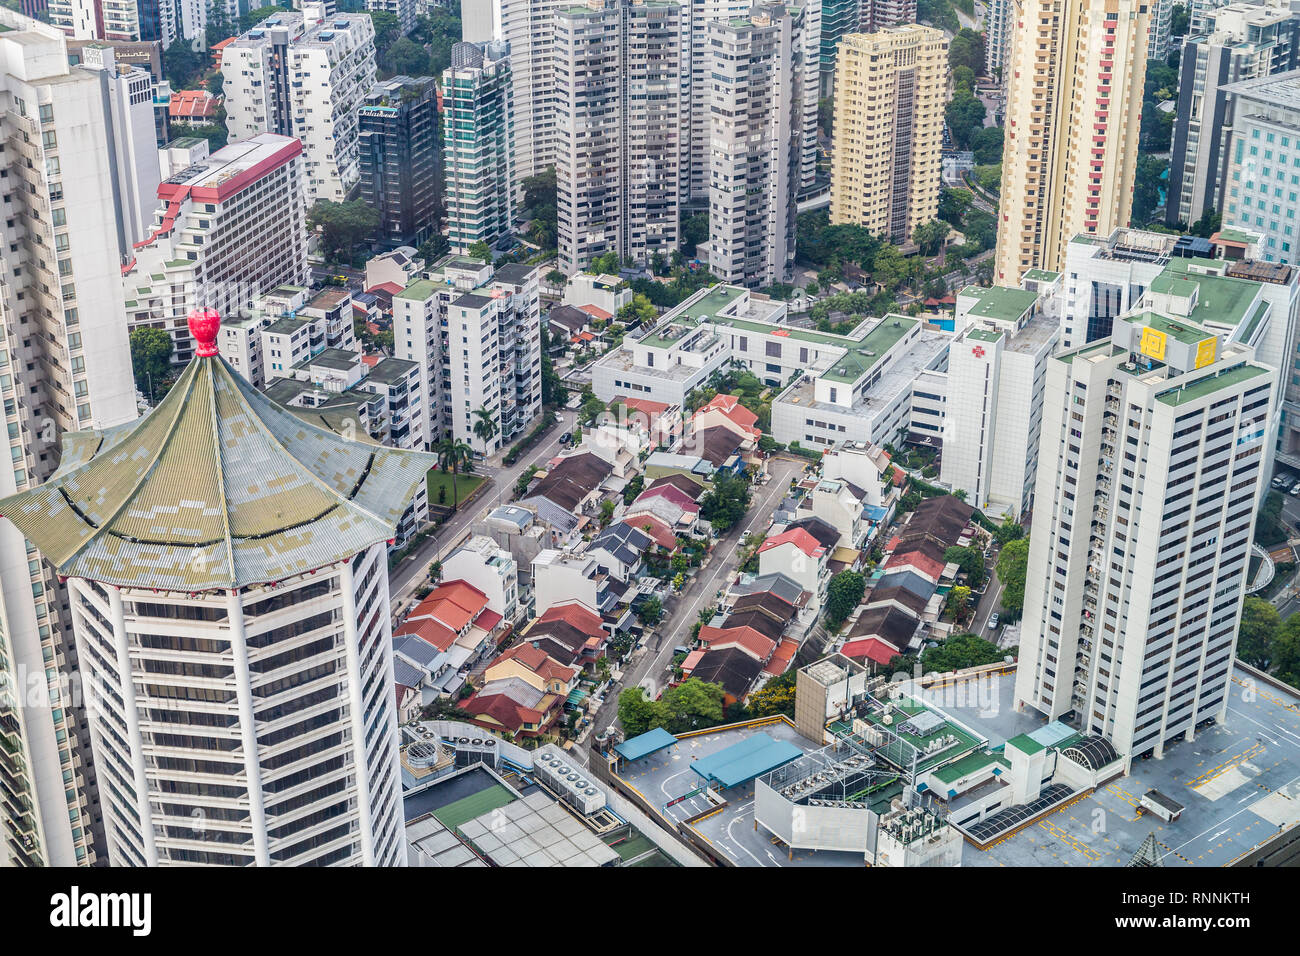 Das städtische Wachstum. Singapur Stadt Blick von Oben von Ion Mall. Hochhaus Wohnung und Büro Gebäude umgeben Flaches Bau einer früheren Ära. Stockfoto